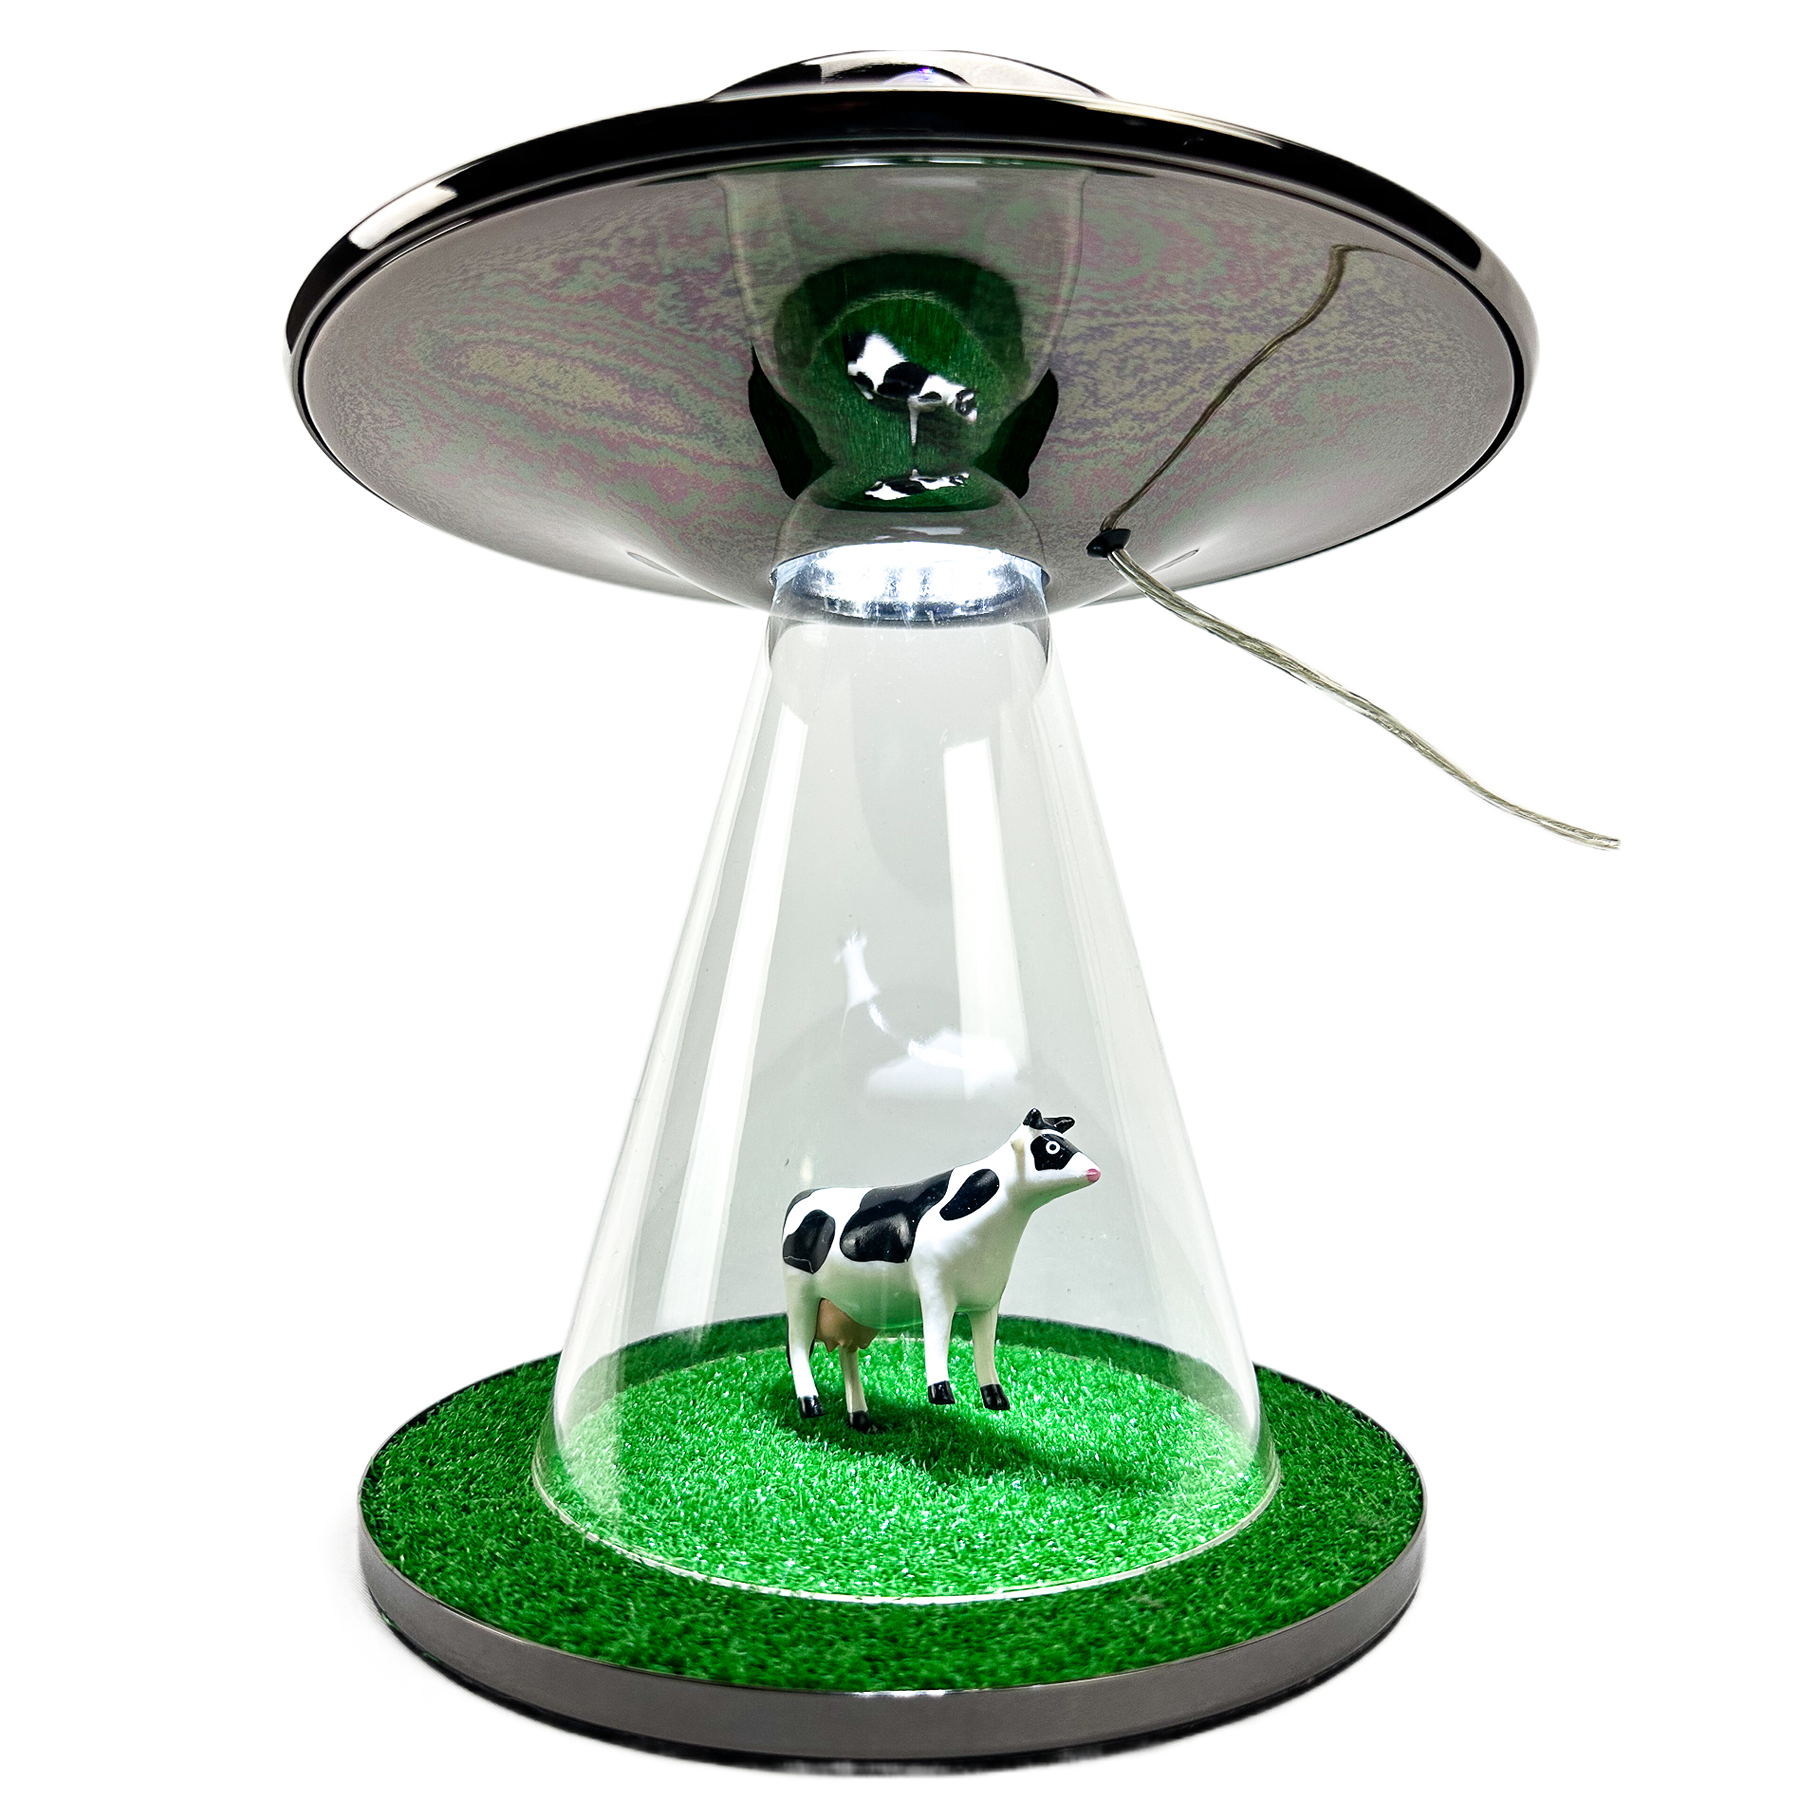 The Abduction Alien Lamp Original